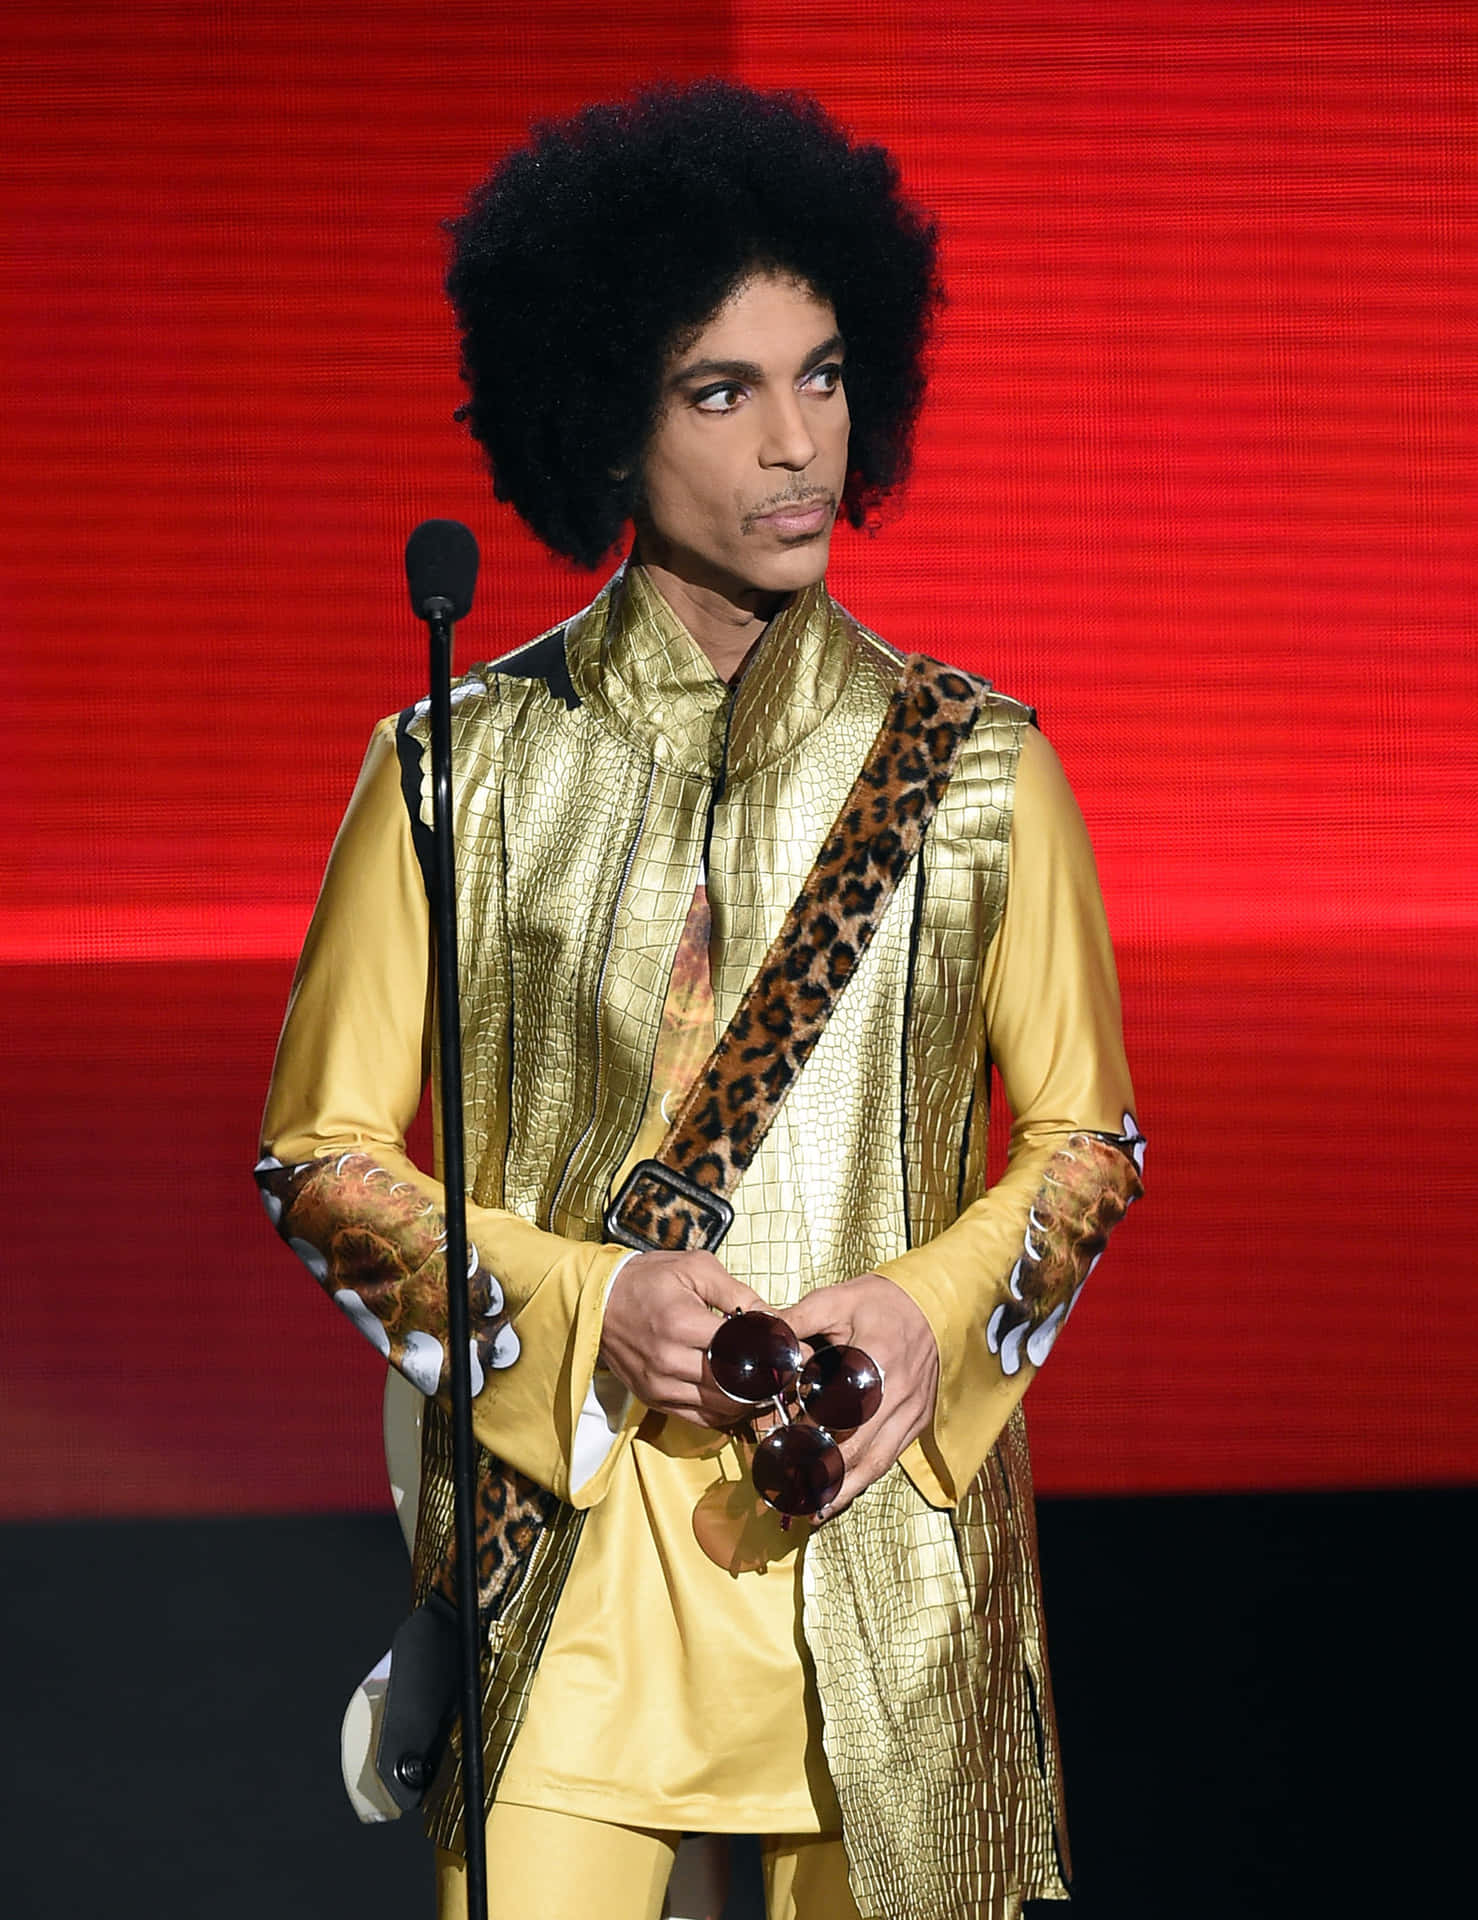 Legendärerpopstar Prince Tritt Auf Der Bühne Auf